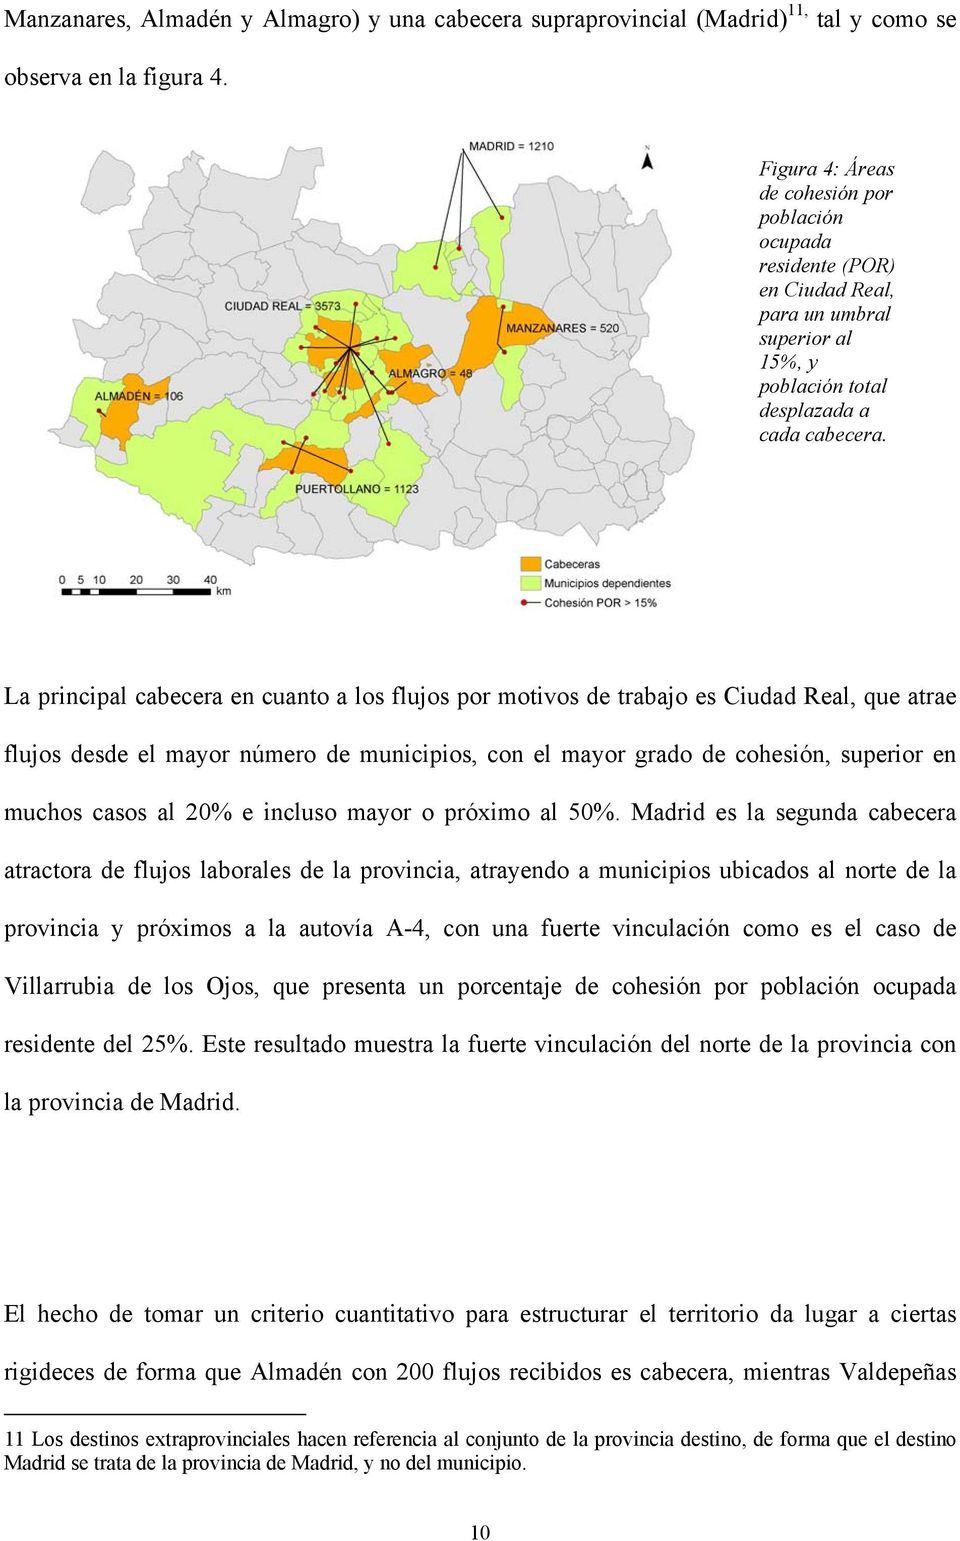 La principal cabecera en cuanto a los flujos por motivos de trabajo es Ciudad Real, que atrae flujos desde el mayor número de municipios, con el mayor grado de cohesión, superior en muchos casos al